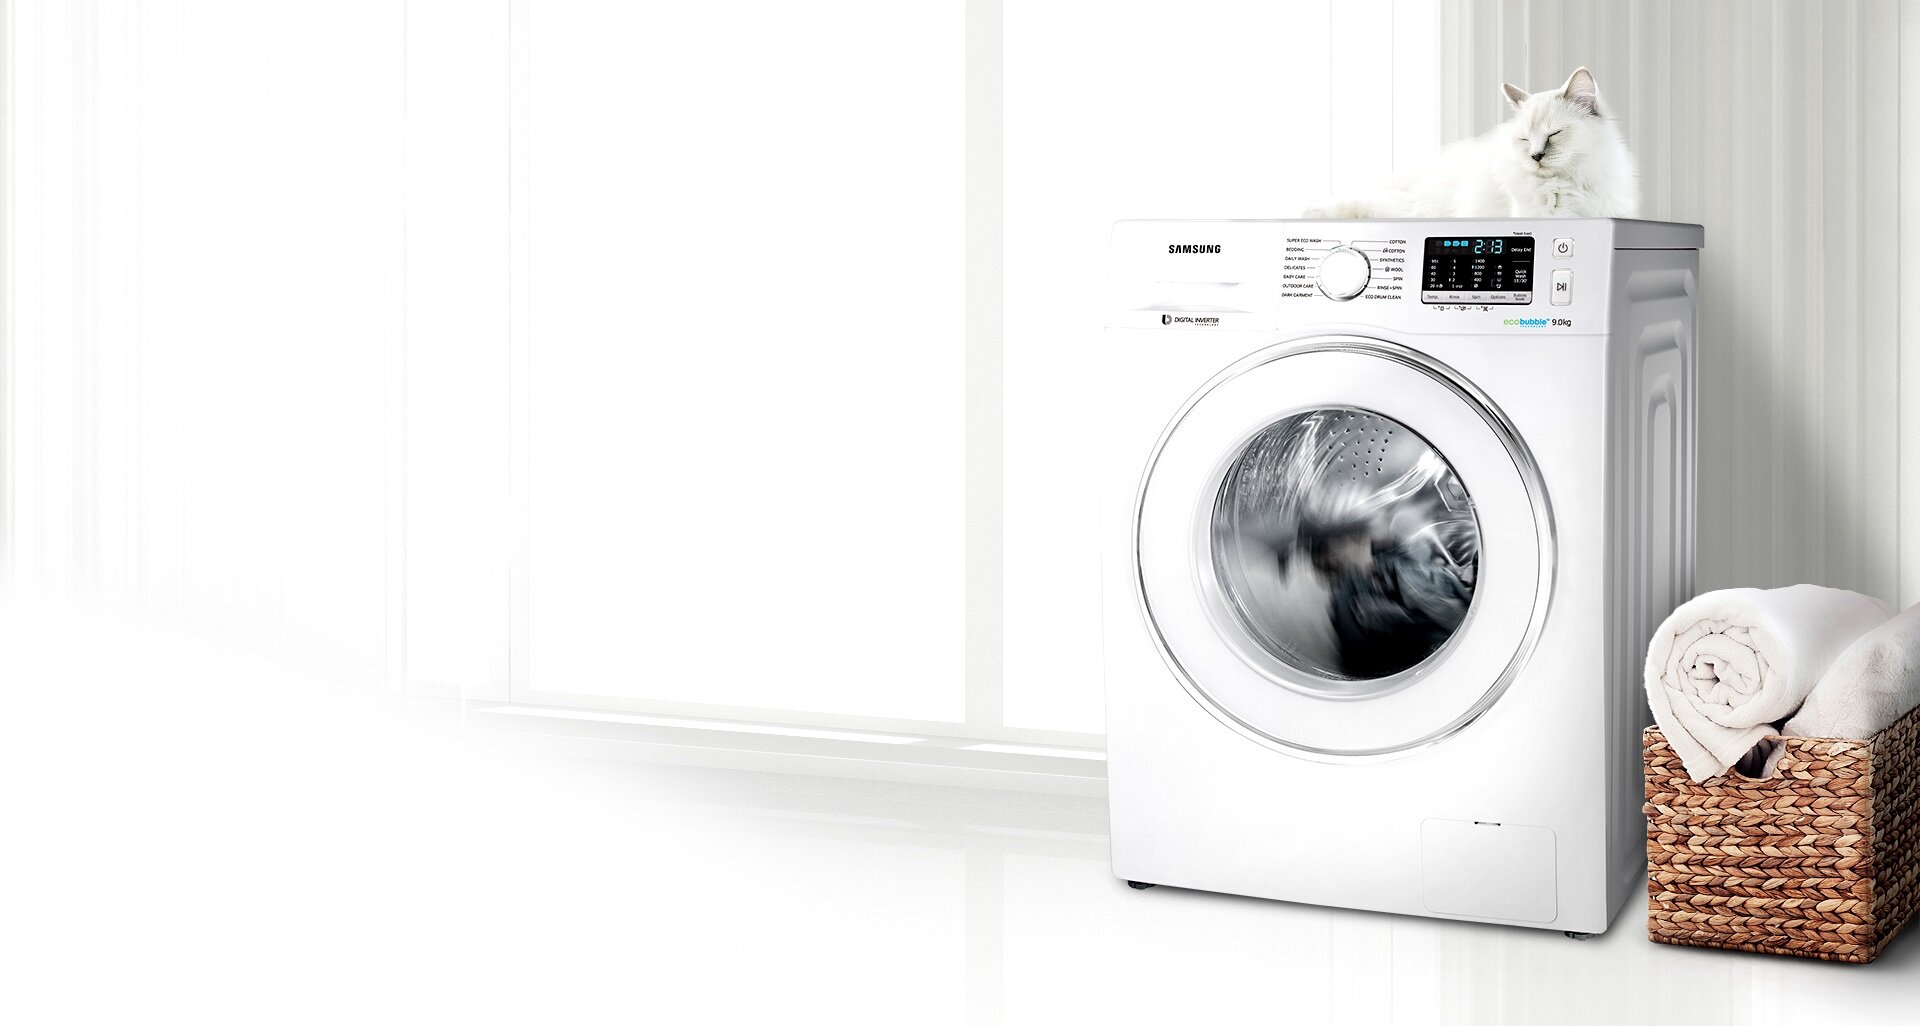 Стиральная машинка l. Стиральная машина l62822 АЕГ. Samsung washing Machine 2022. Стиральная машина в интерьере. Стиральная машина фон.